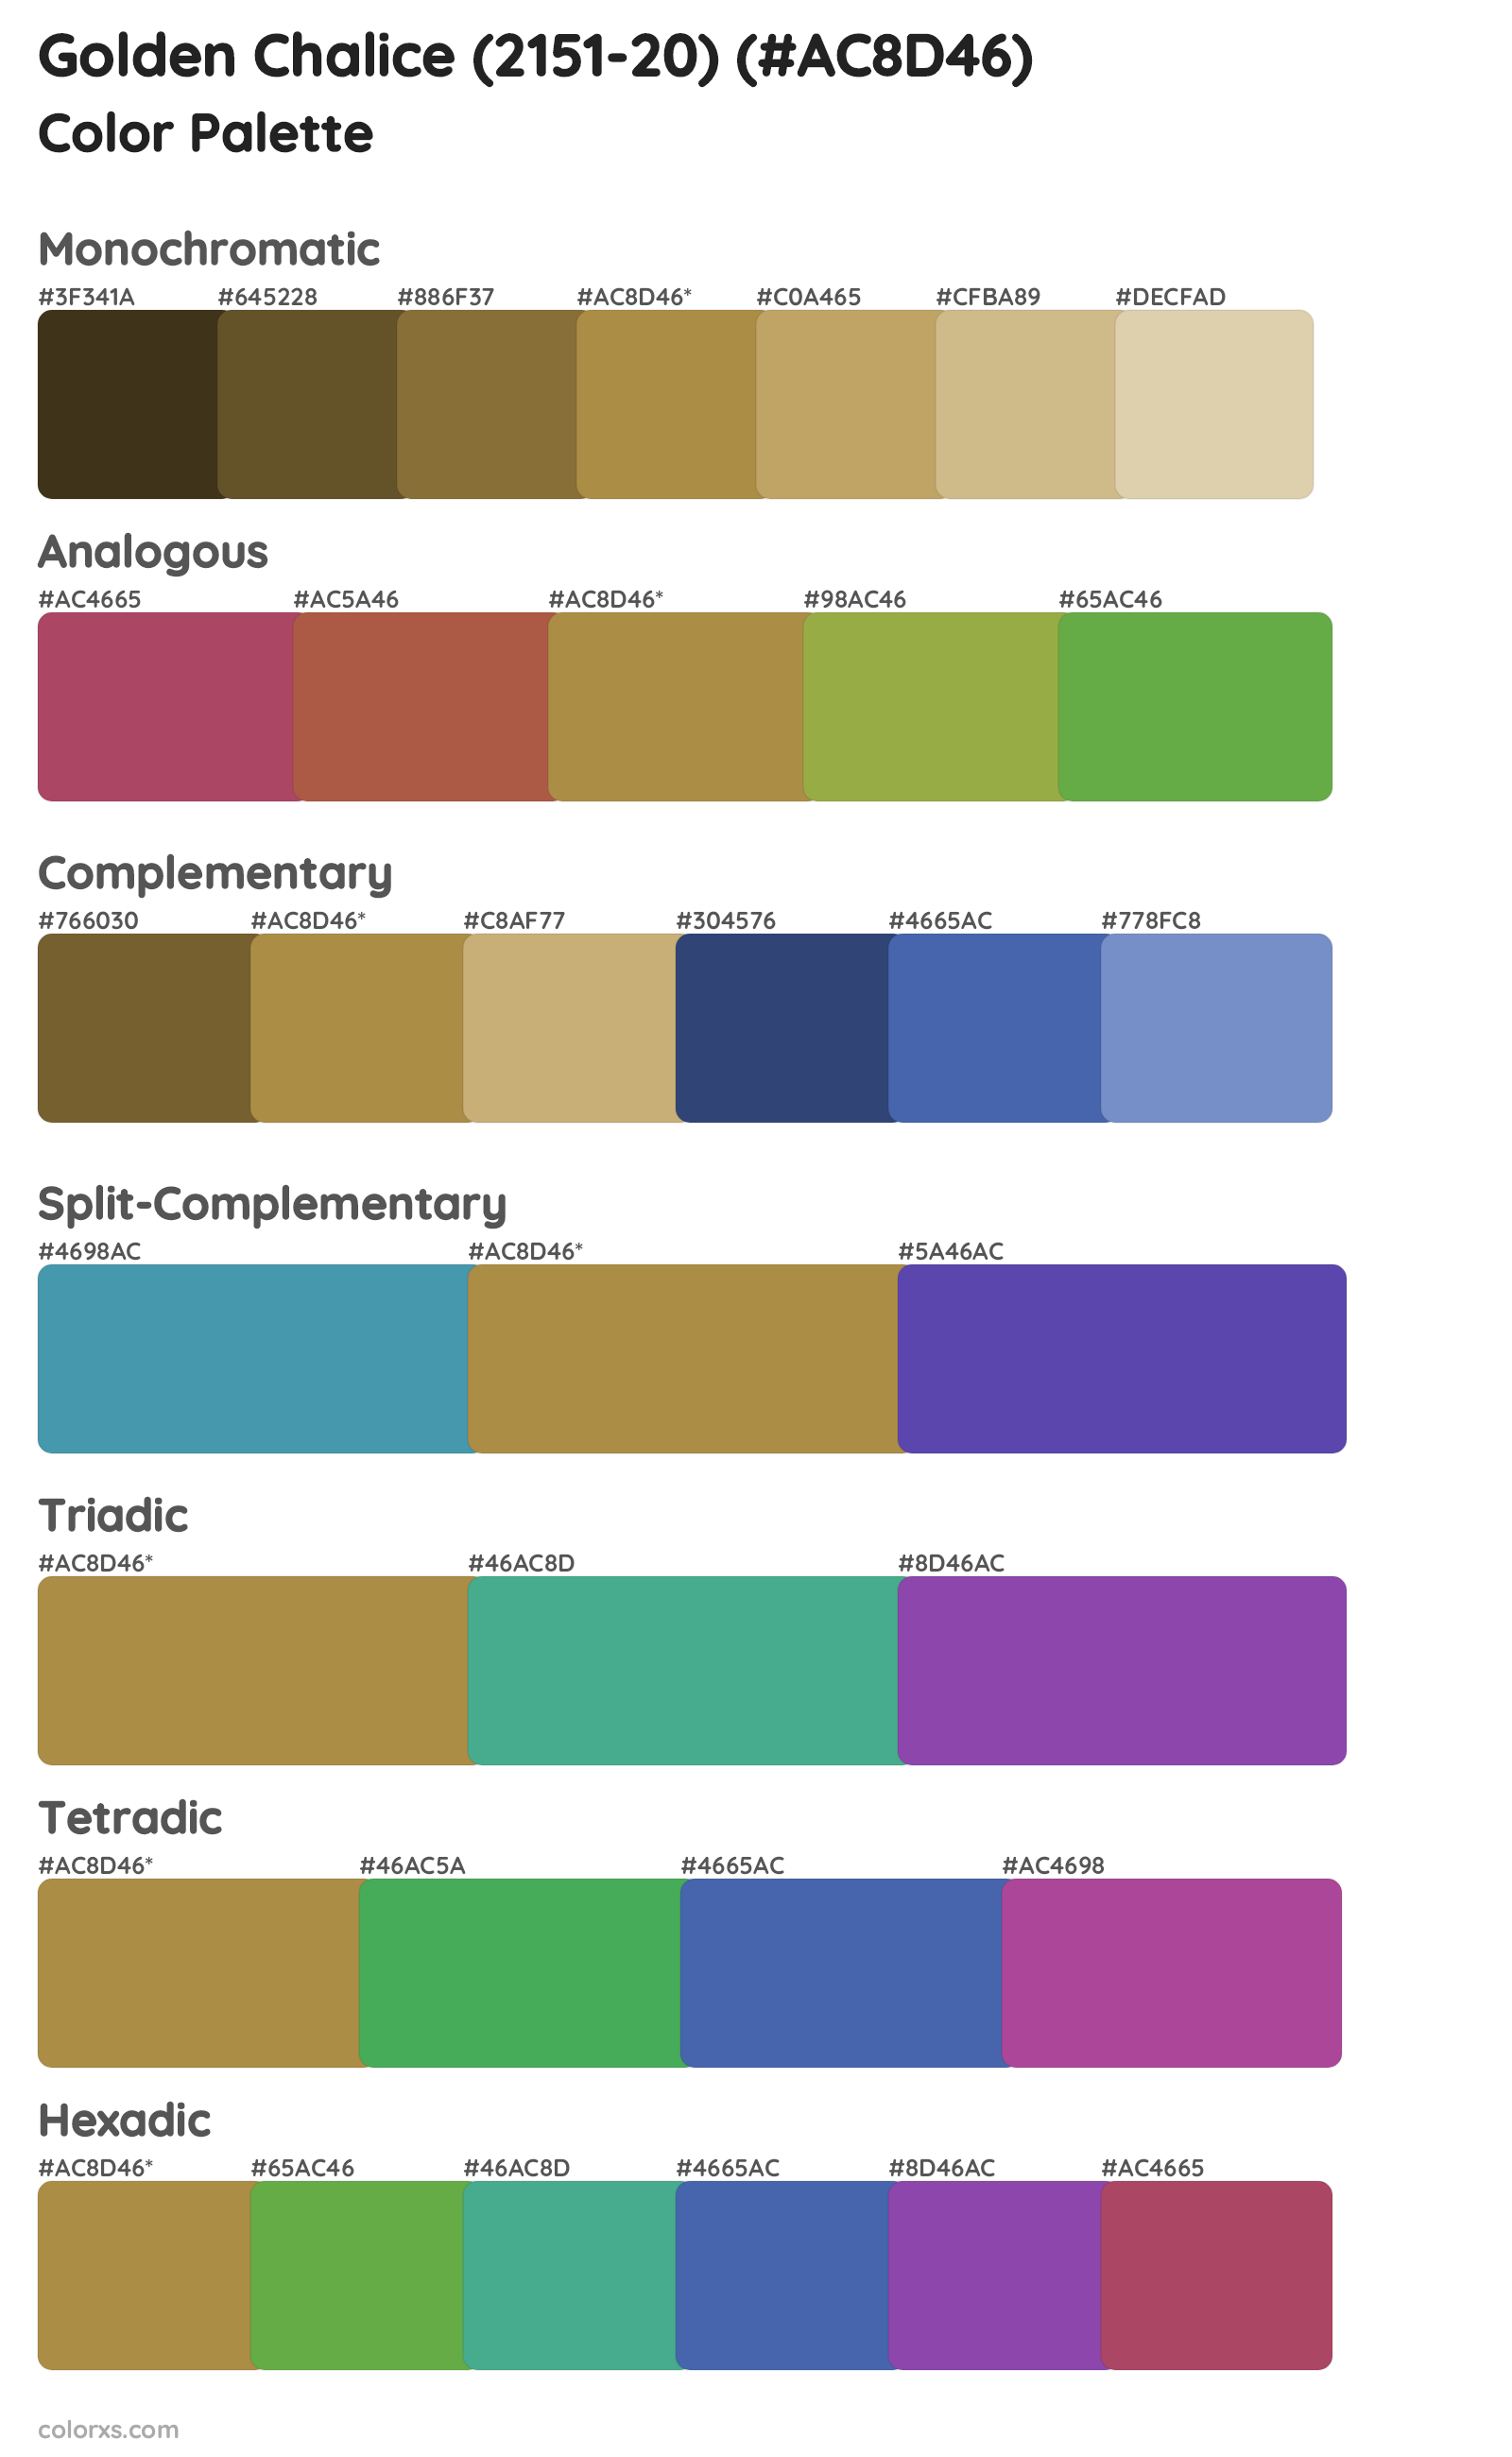 Golden Chalice (2151-20) Color Scheme Palettes